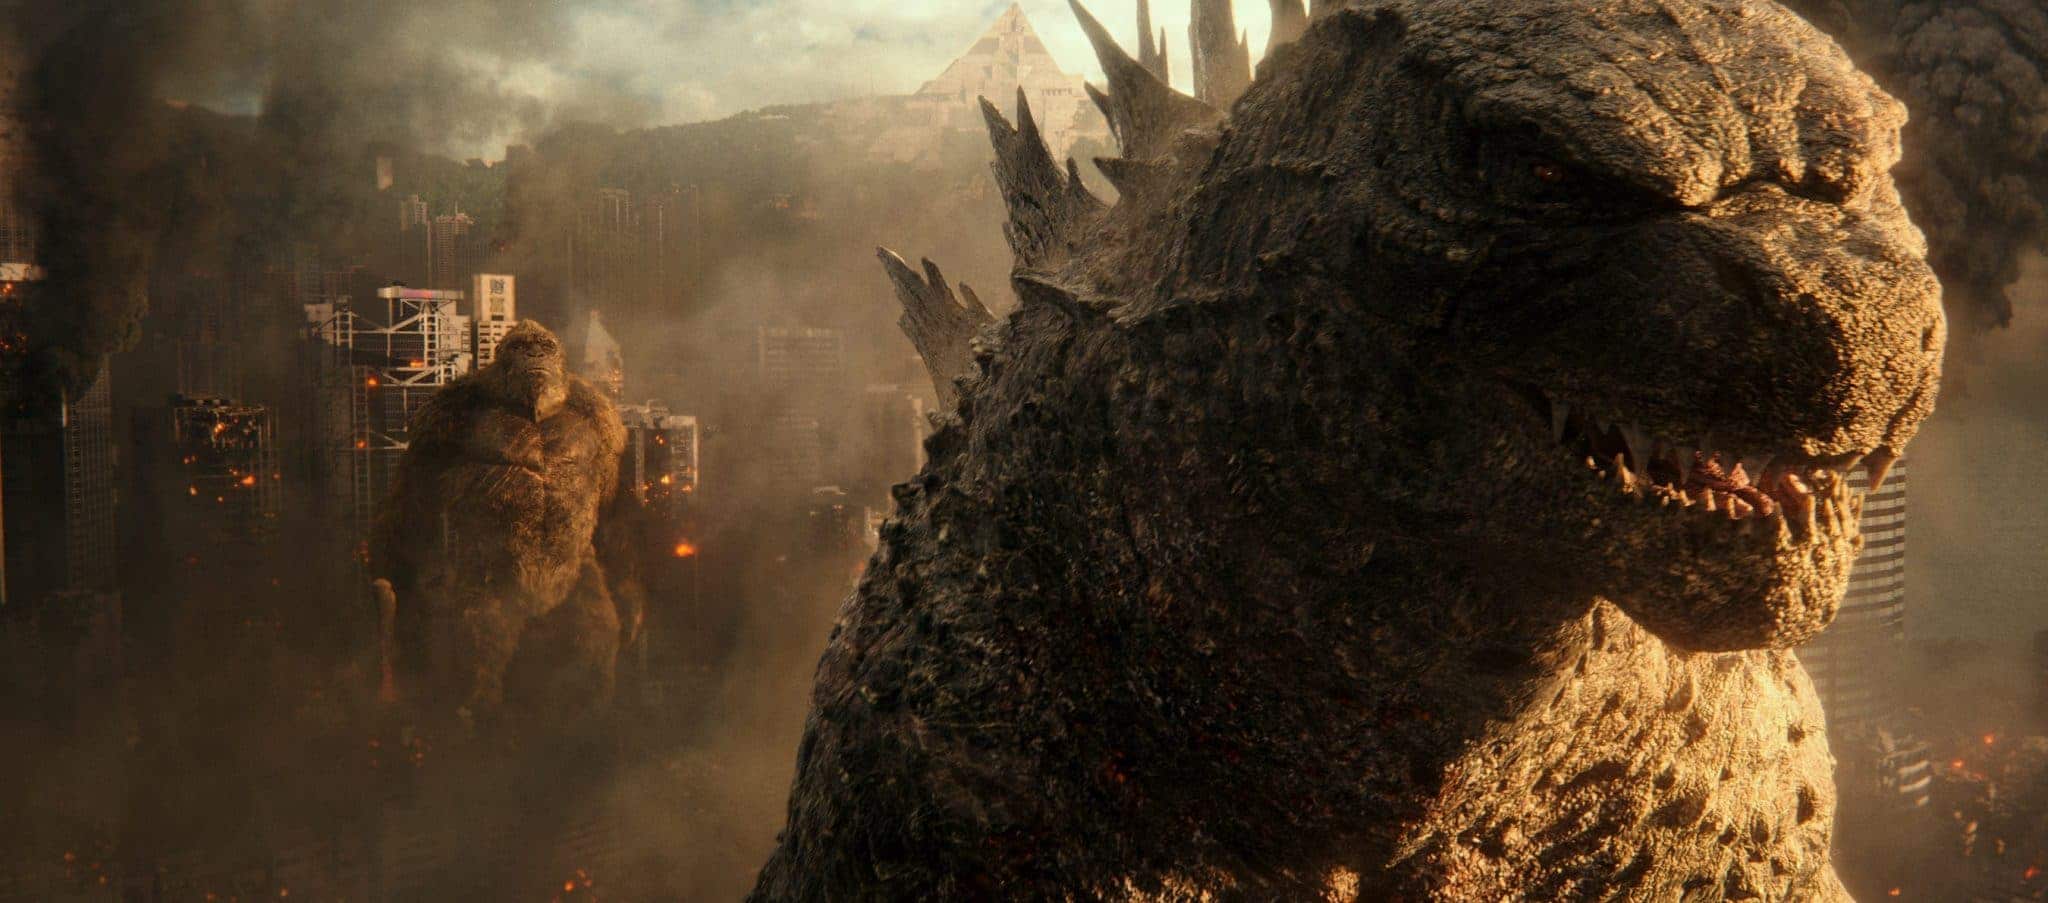 Scene from Godzilla vs Kong